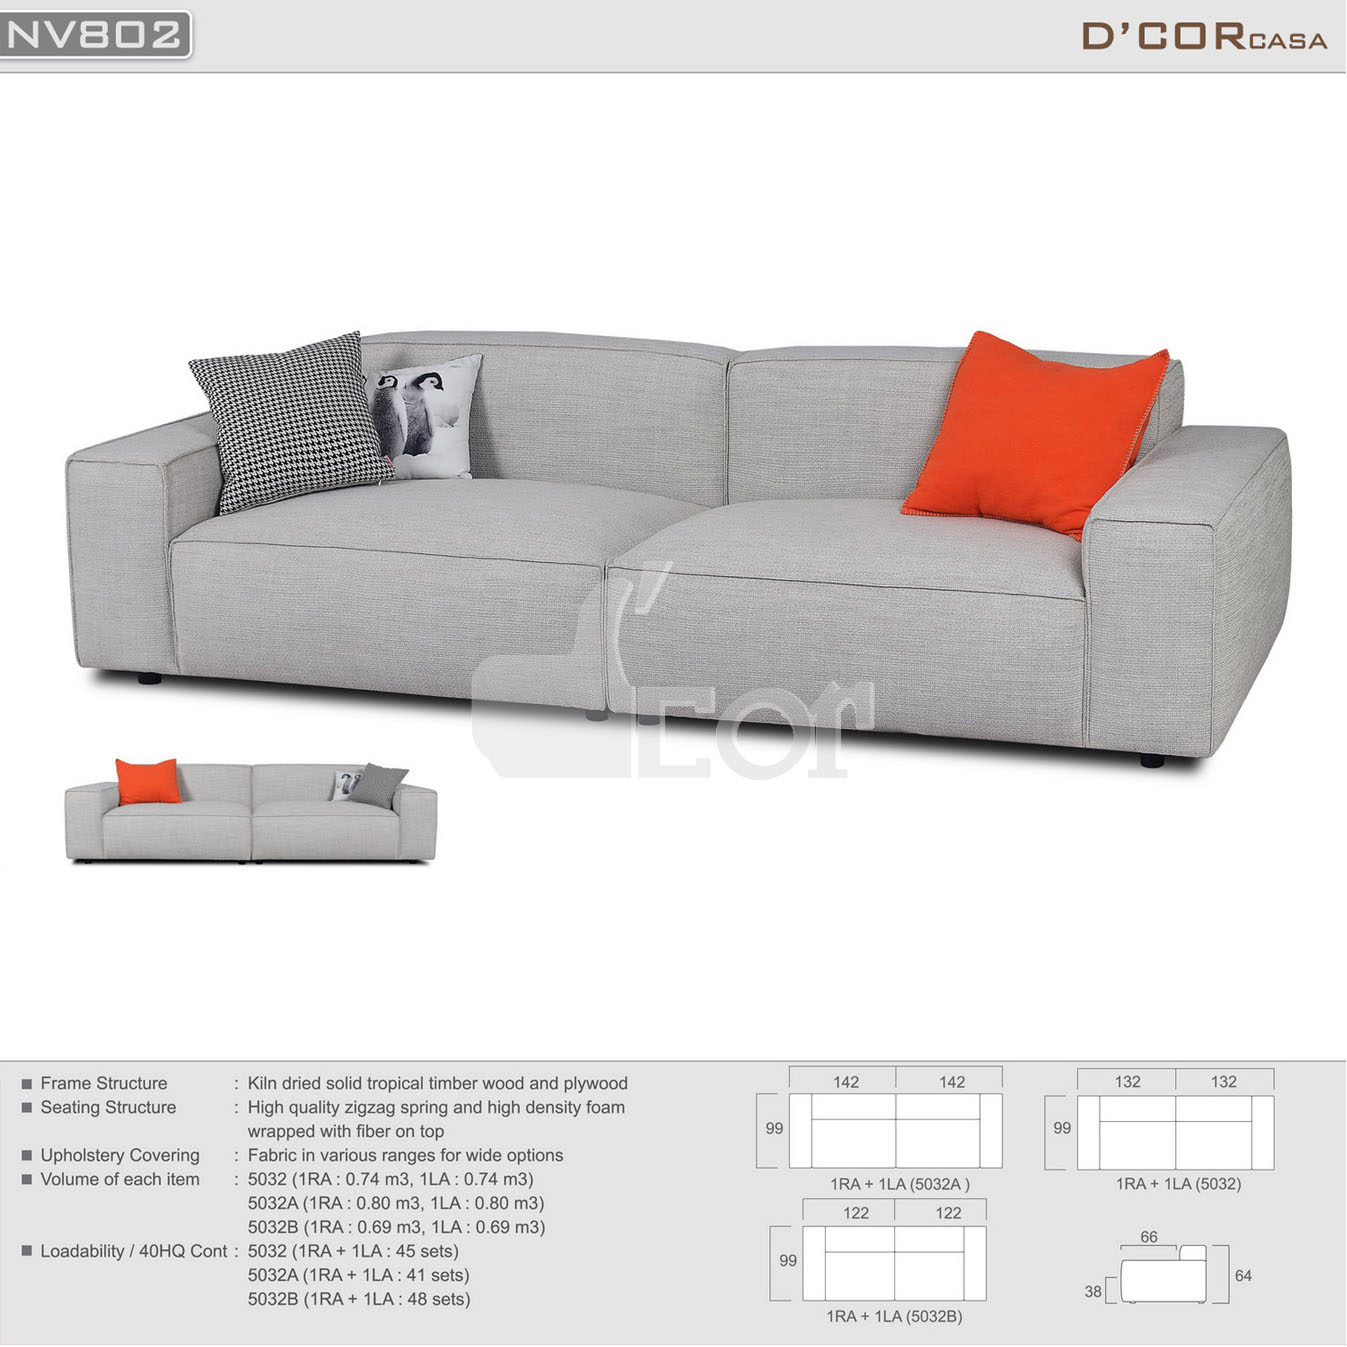 21 mẫu sofa hot nhất cho phòng khách chung cư đẹp hiện đại giá siêu rẻ > 